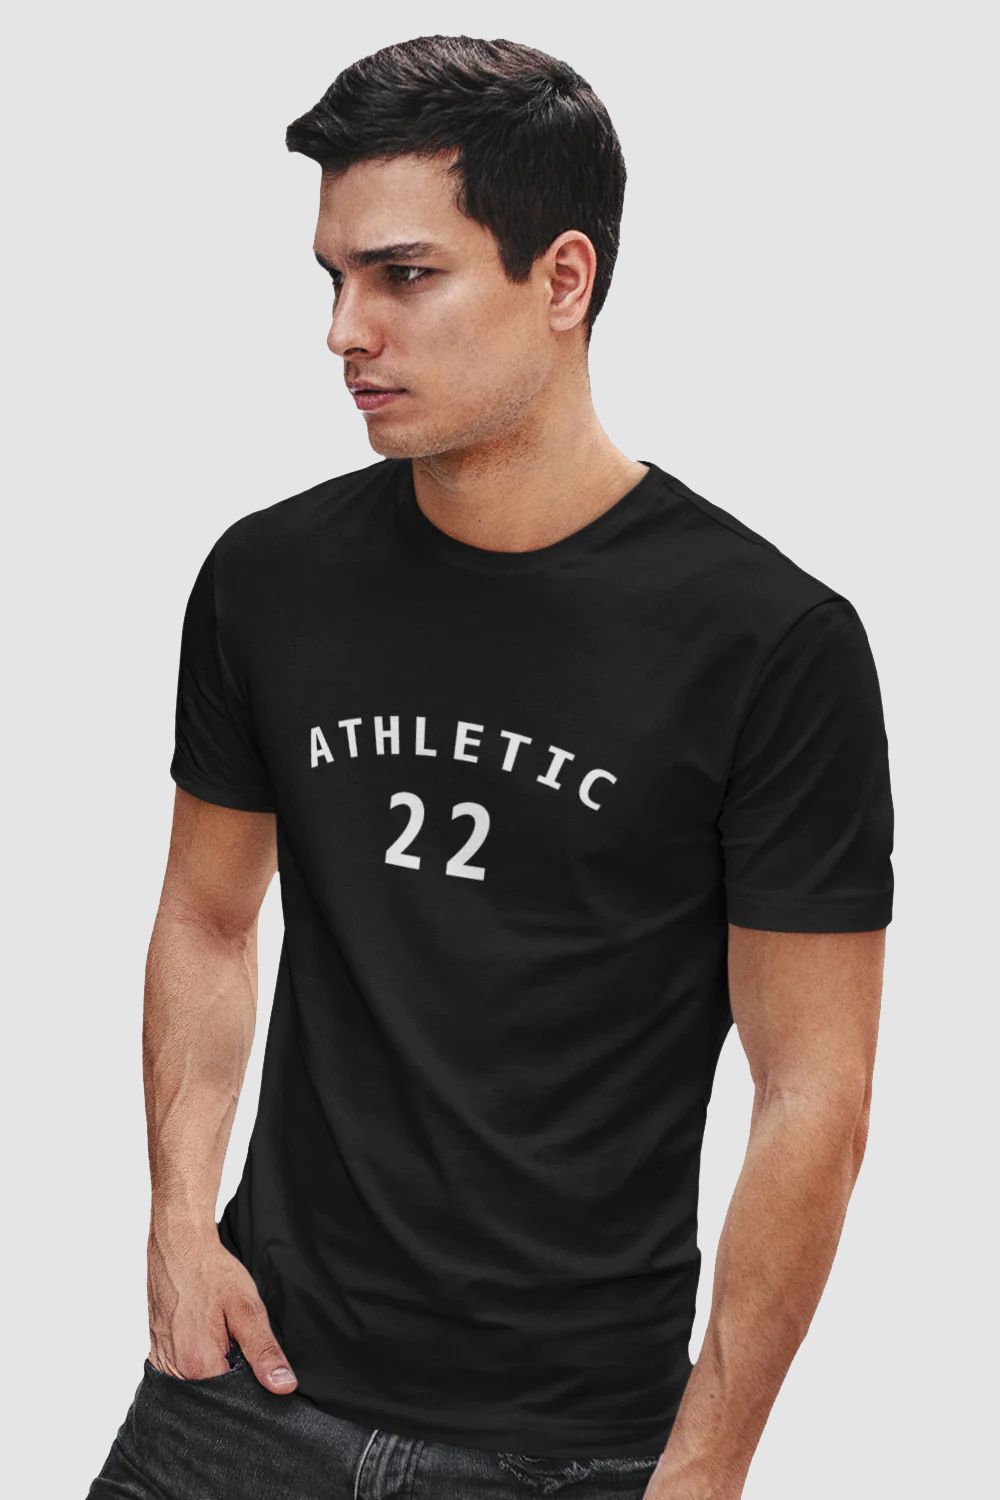 Athletic Graphic Printed Black Tshirt